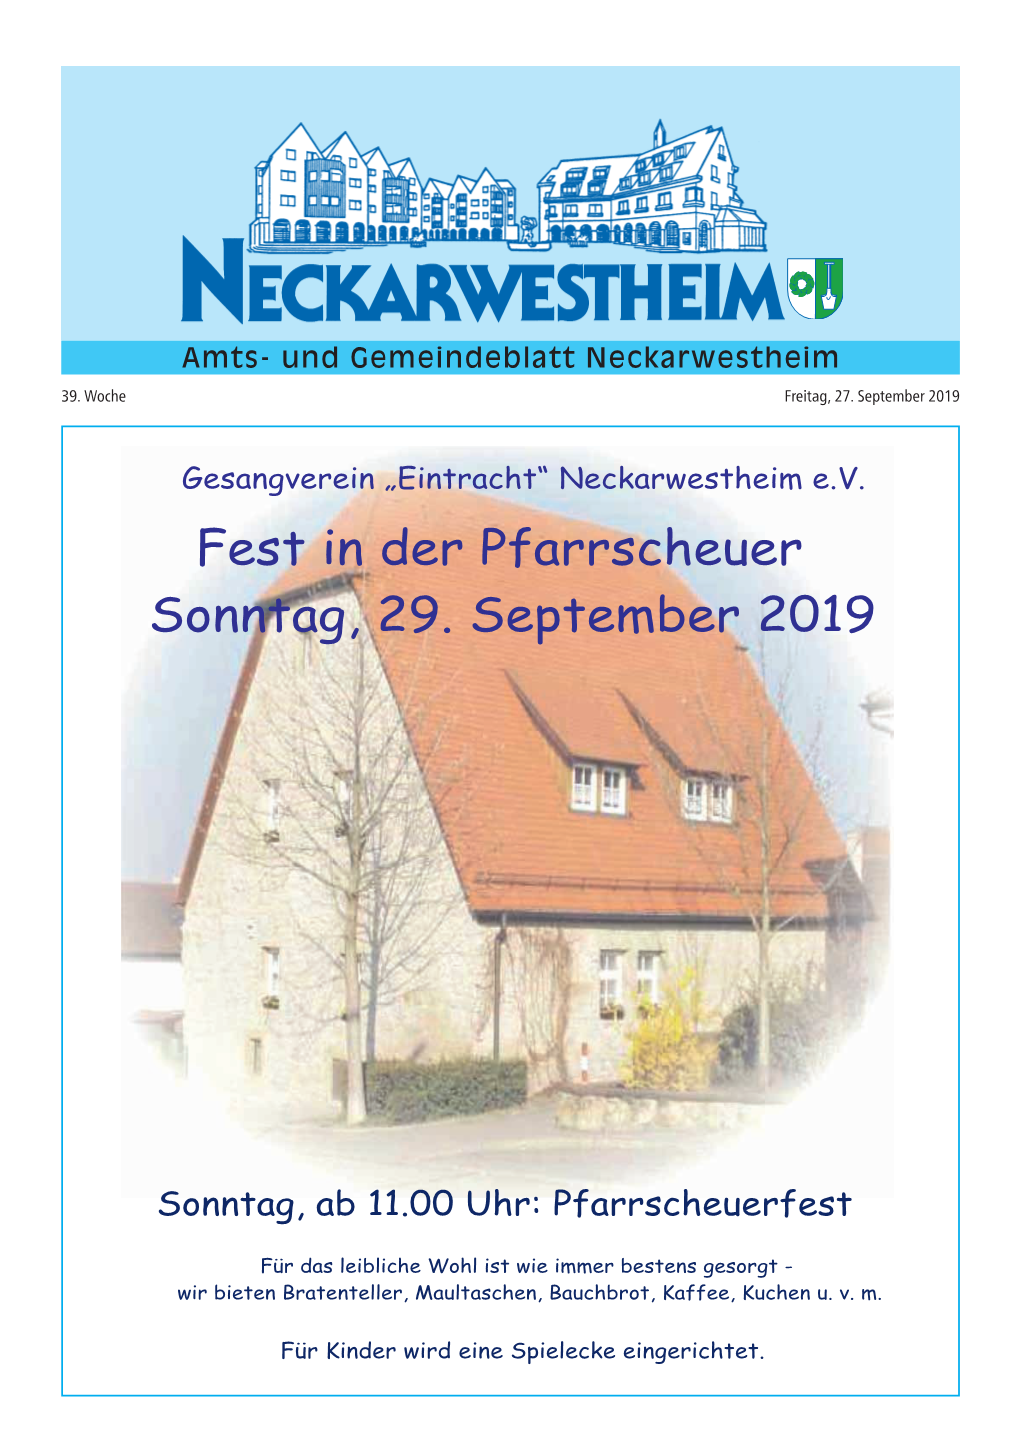 Fest in Der Pfarrscheuer Sonntag, 29. September 2019